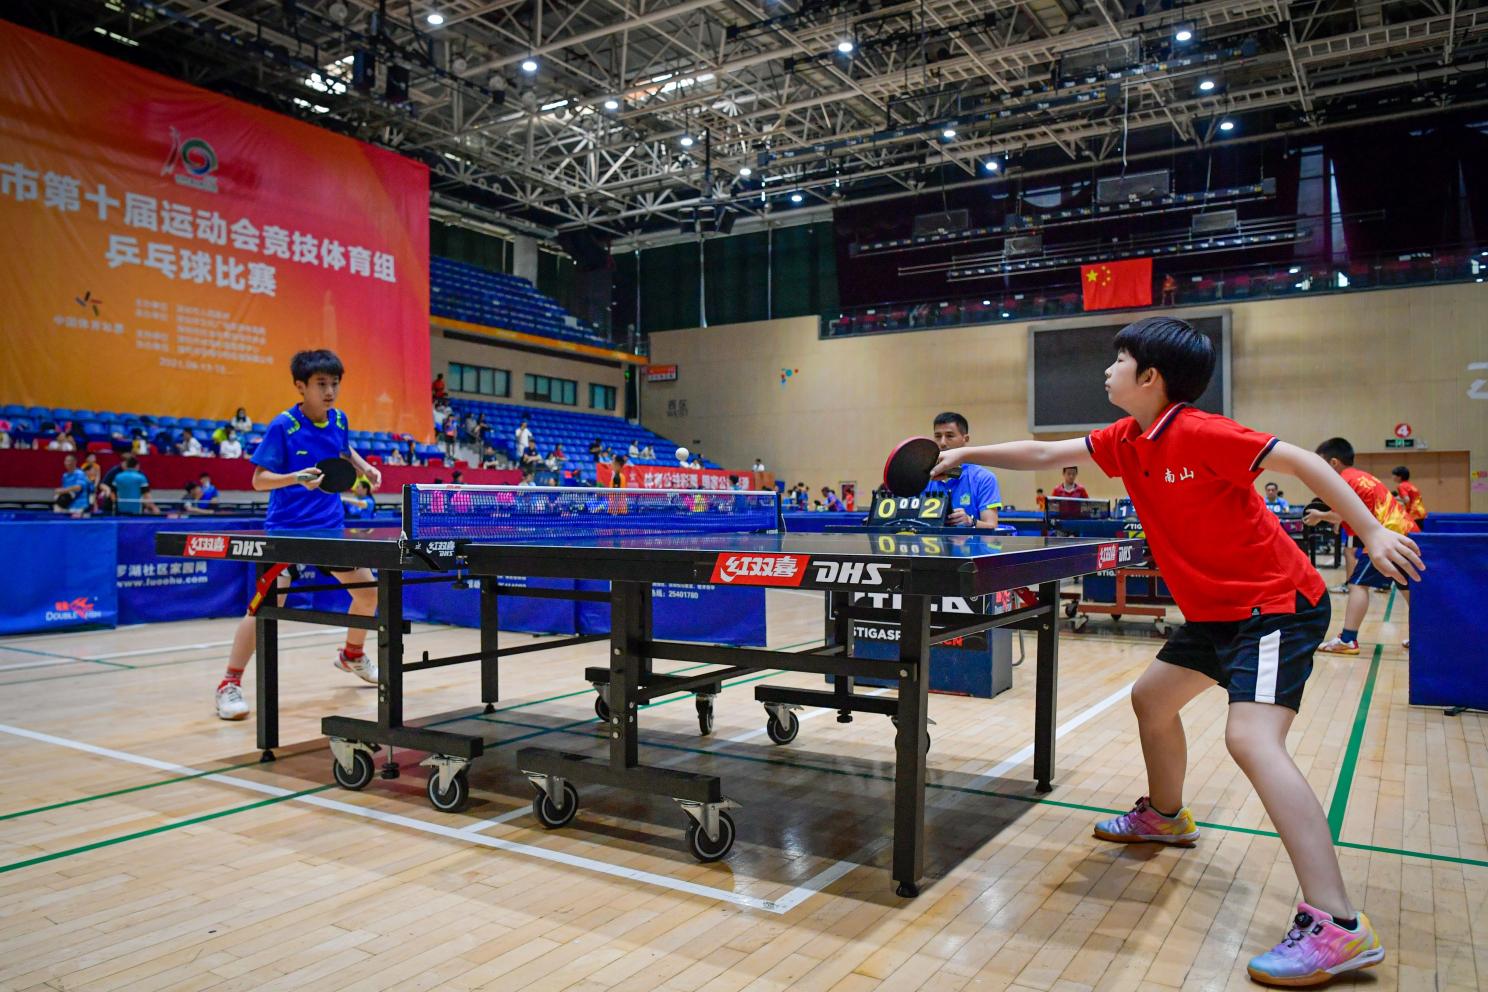 深圳十运会竞技体育组乒乓球比赛落幕南山区夺团体第一